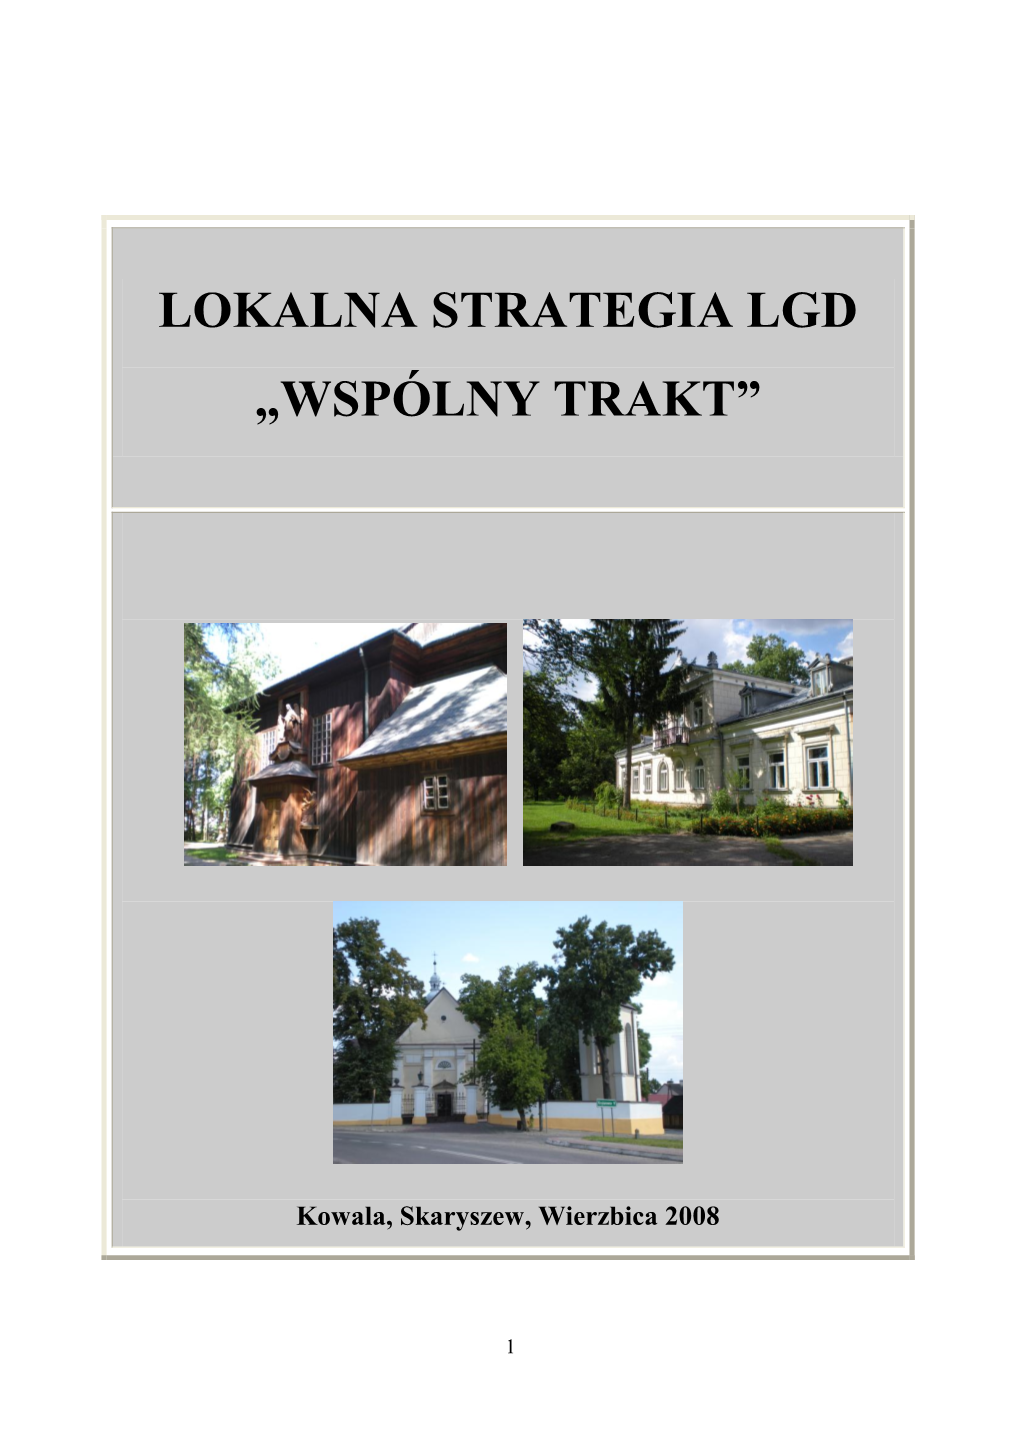 LSR – LGD WSPOLNY TRAKT – Aktualizacja